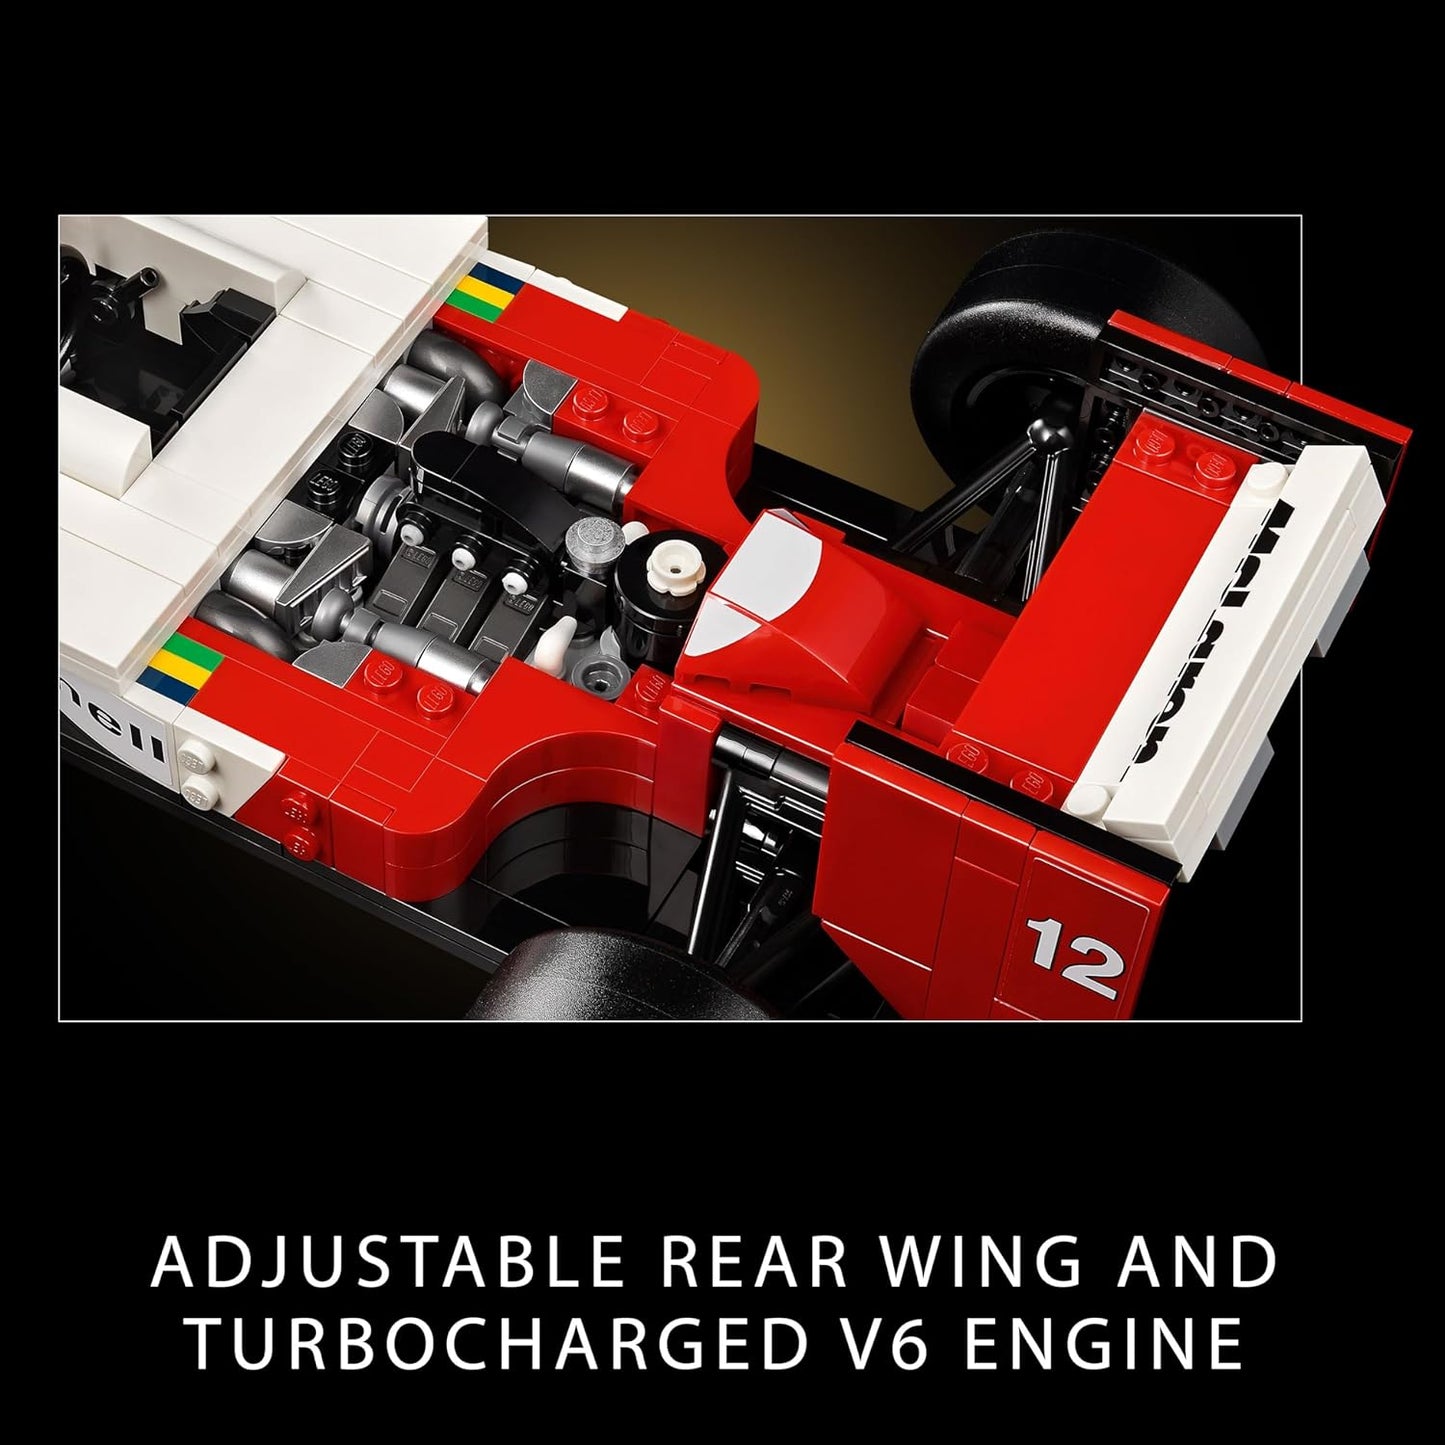 LEGO  Conjunto de desempenho Technic Mercedes-AMG F1 W14 E para adultos construir, kit de construção de modelo de carro de corrida em escala, decoração colecionável para casa ou escritório, presentes para homens, mulheres, ele ou ela 42171